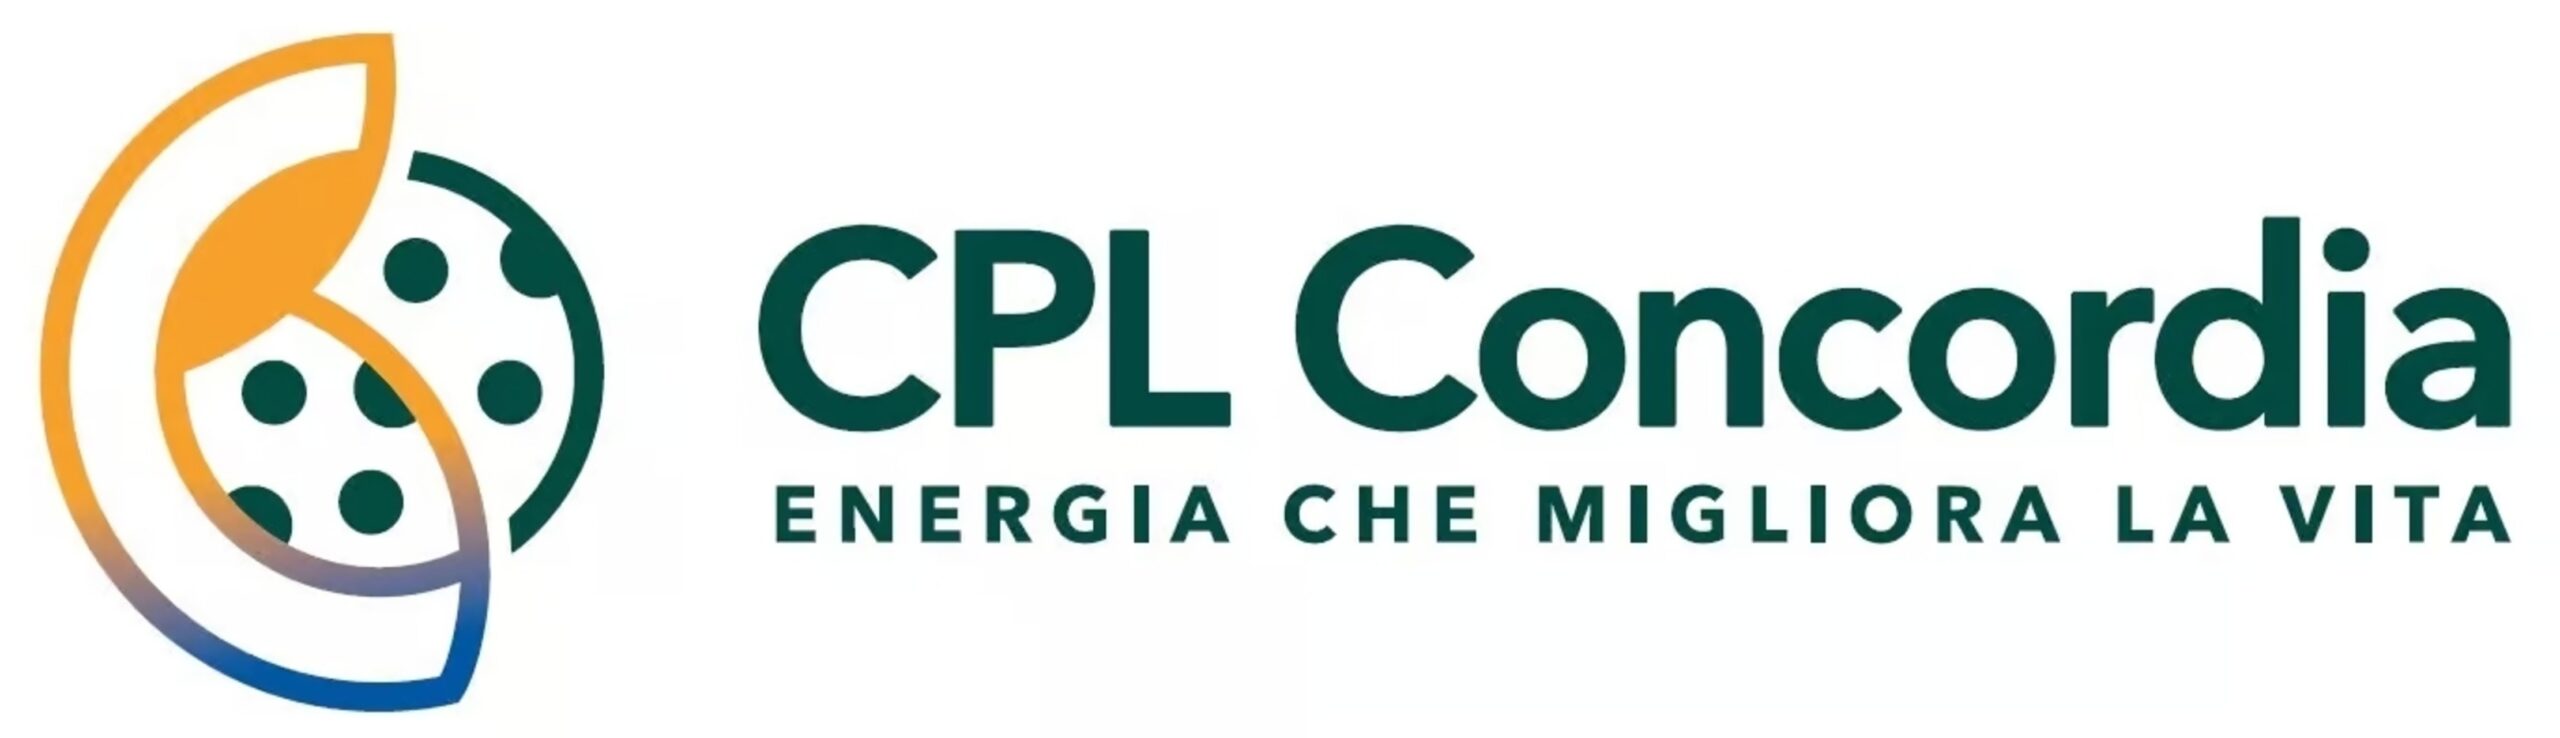 CPL Concordia: il nuovo logotipo e innovativo logotipo